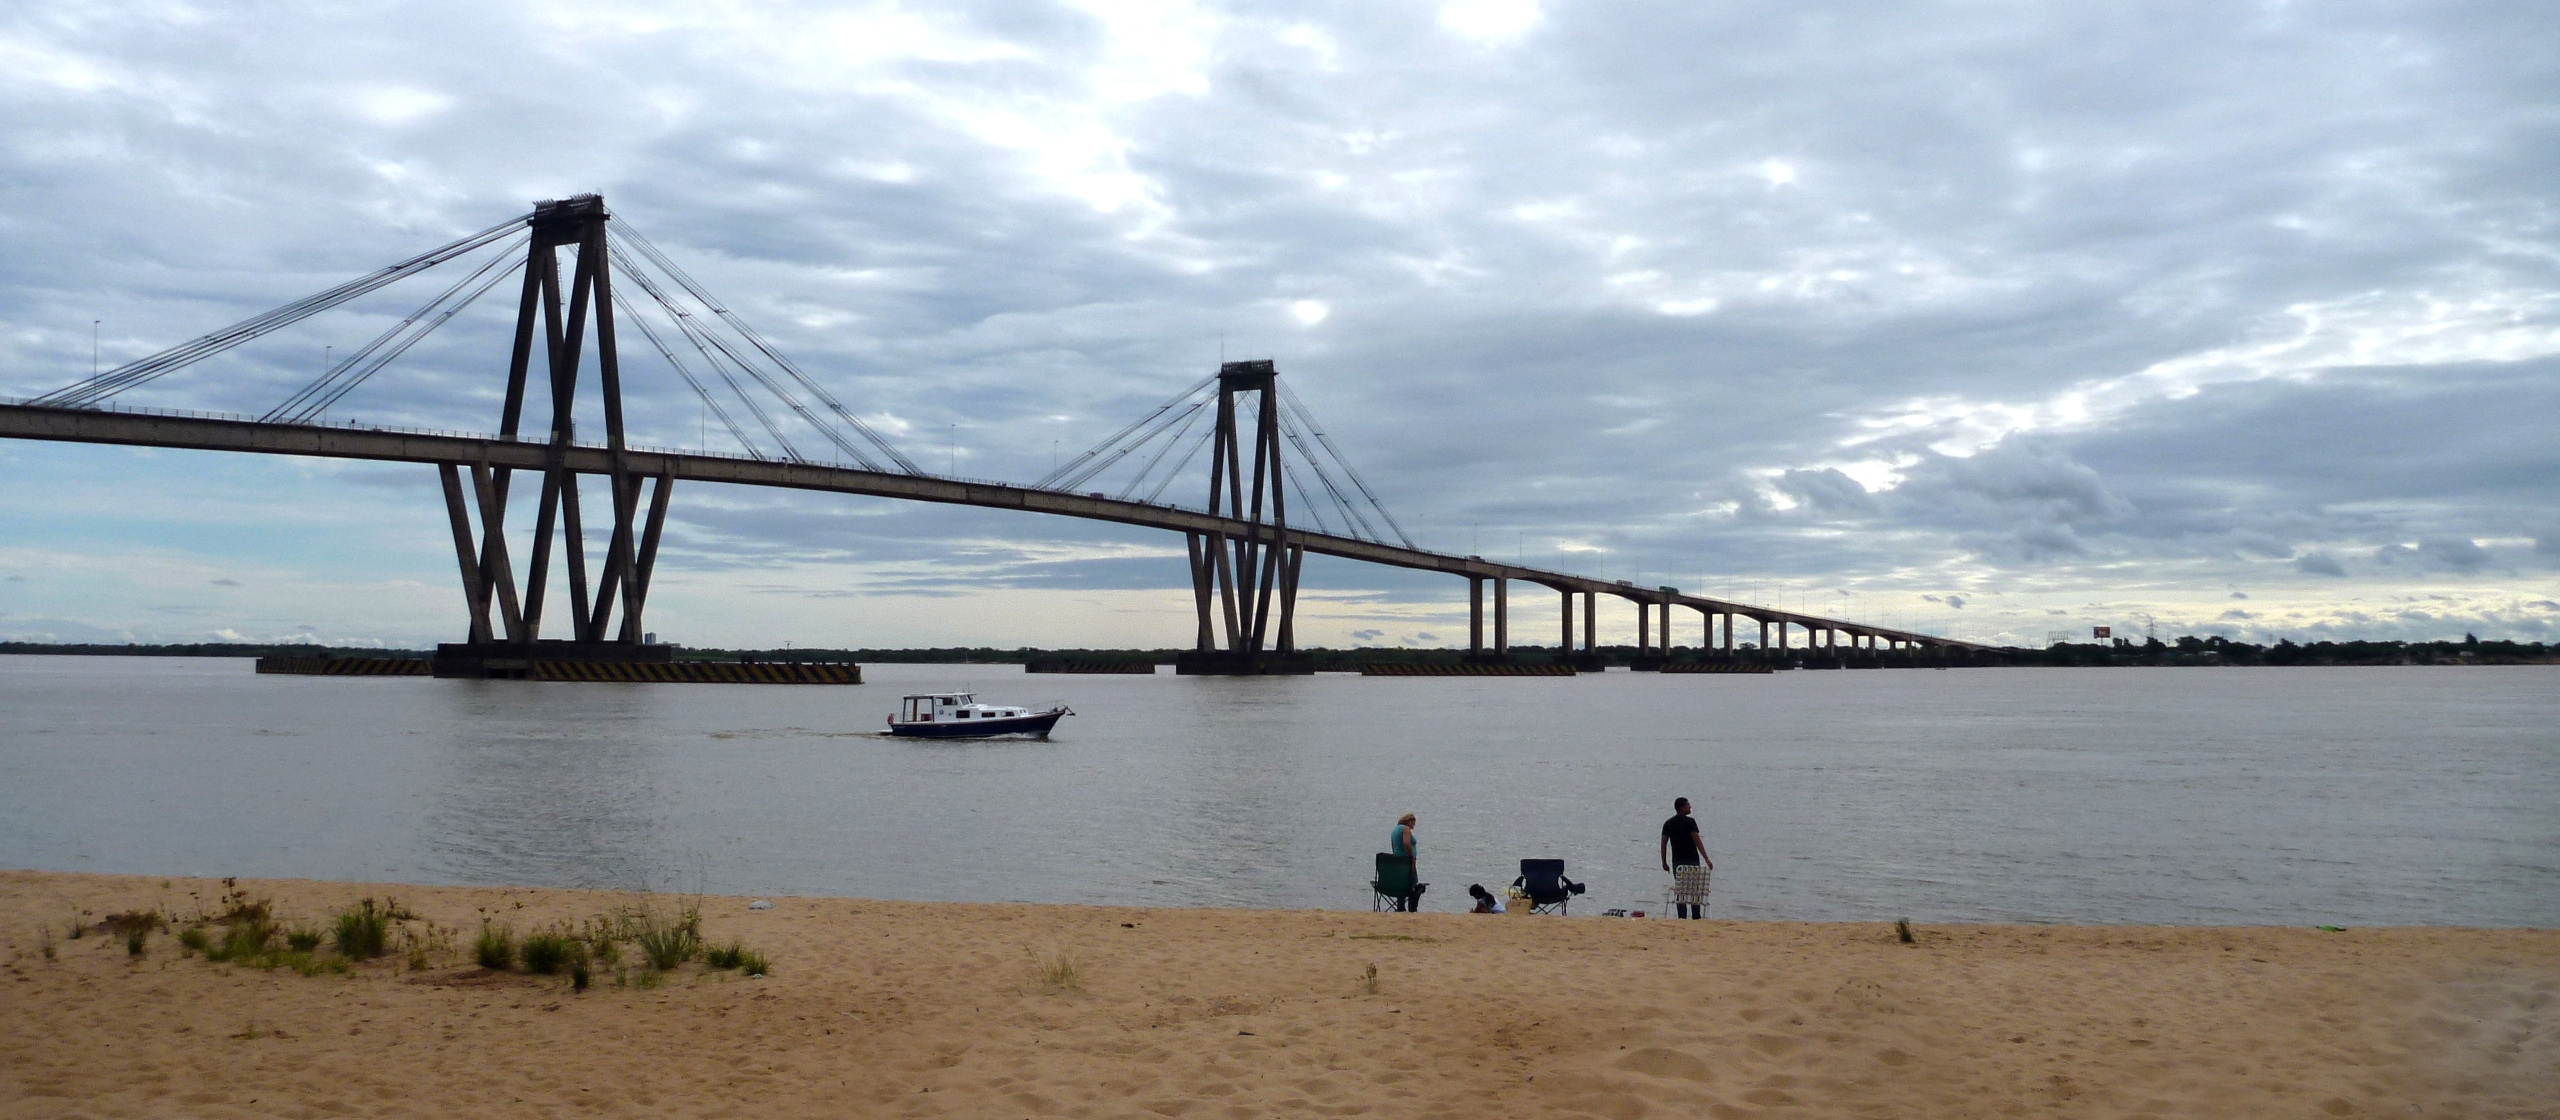 Corrientes, ciudad argentina hermanada con Estepa